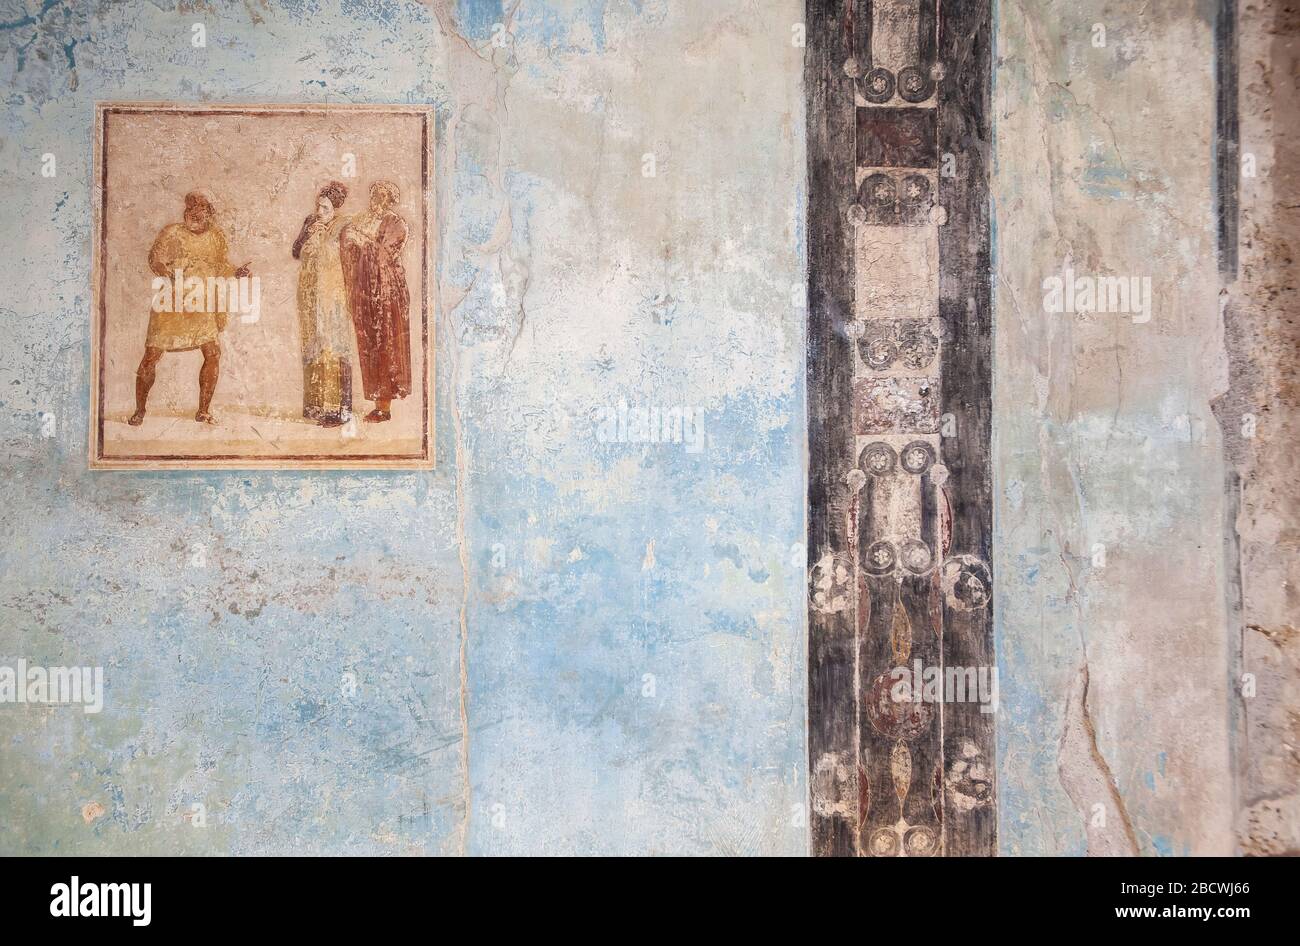 Ancient fresco in the atrium of the Casa di Casca Longus (also known as the Casa dei Quadretti Teatrali), Pompeii, Italy Stock Photo